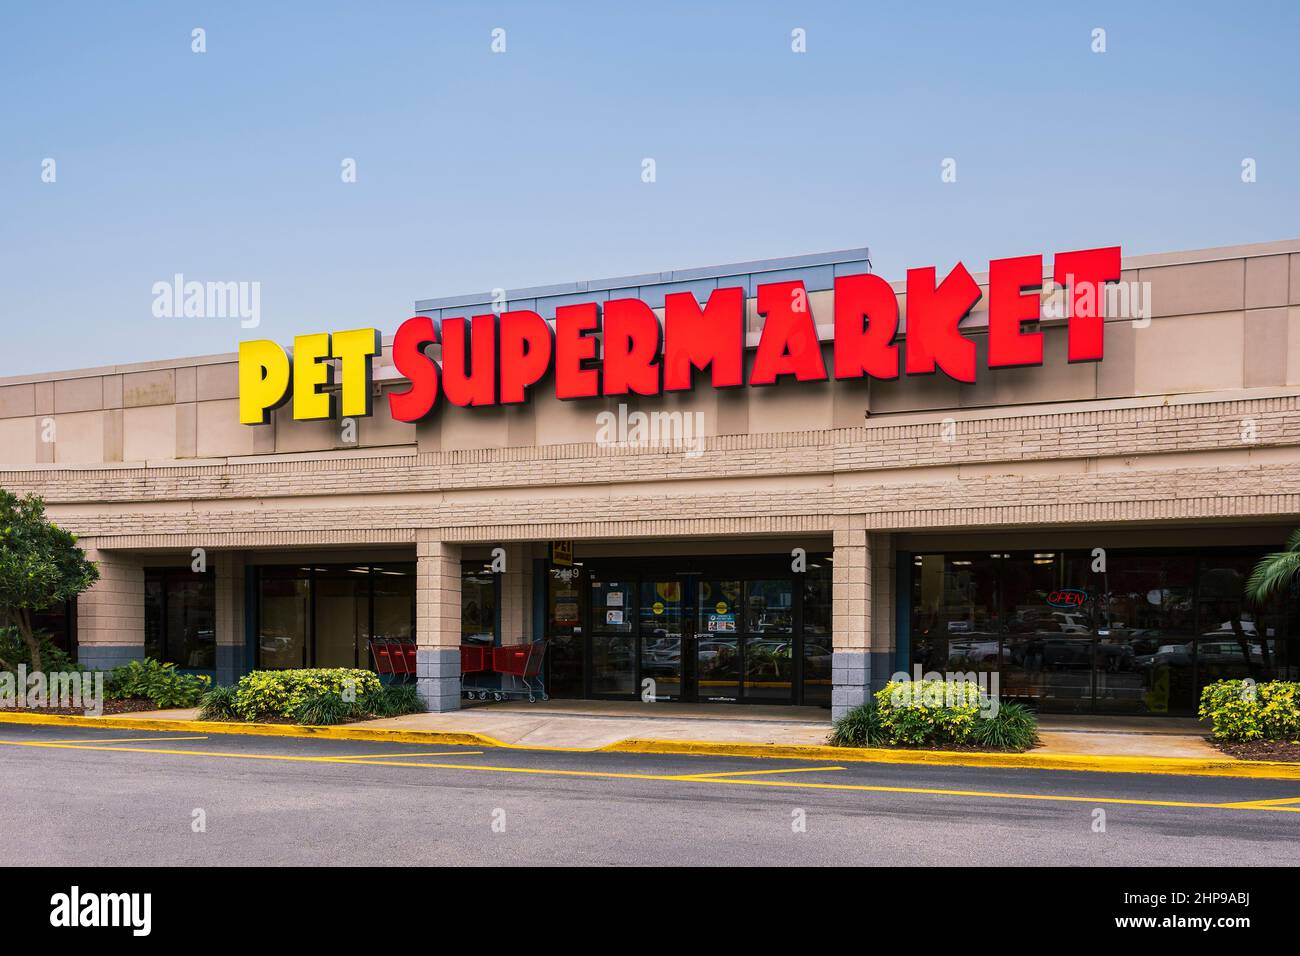 Orlando, Florida - 6. Februar 2022: Horizontale Weitansicht des Außengebäudes des Pet Supermarket Store, gelegen an der Hiawassee Rd. In Orlando, Florida. Stockfoto